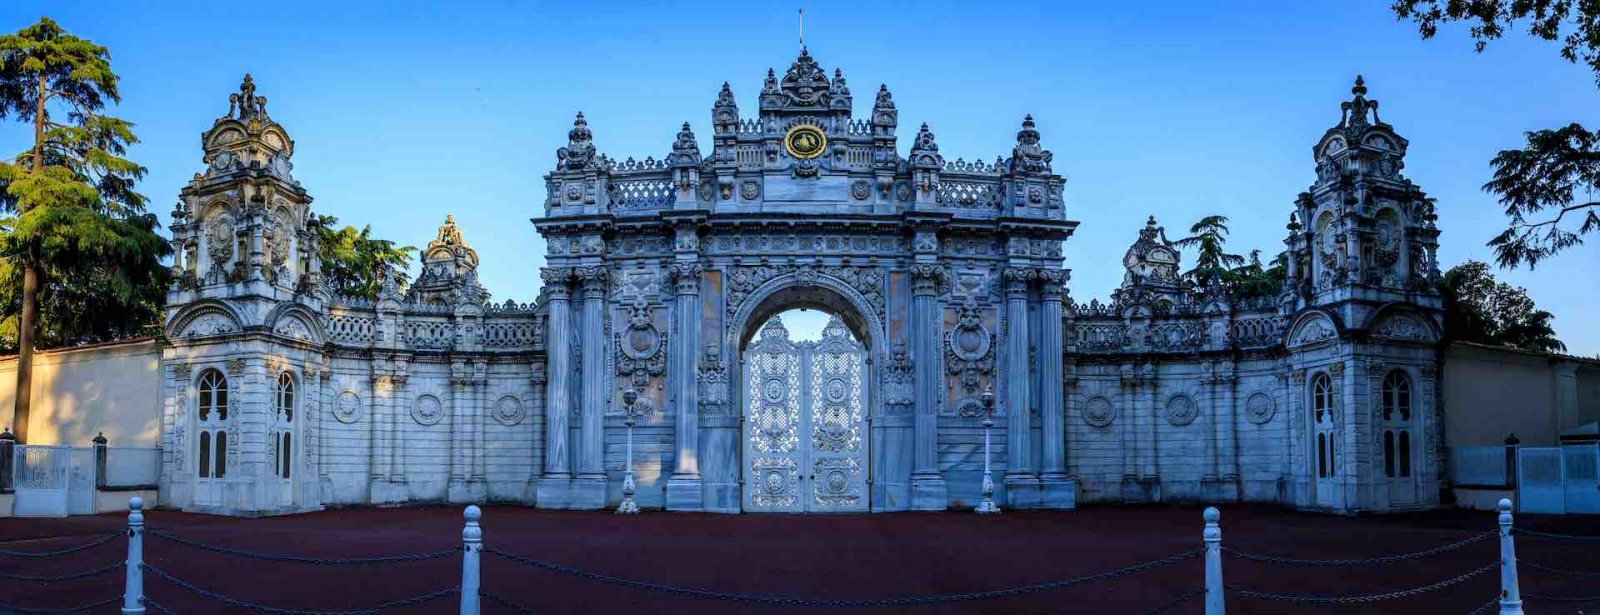 Дворец Долмабахче - расположен в районе Бешикташ в Стамбуле, Турция, на европейском побережье пролива Босфор.